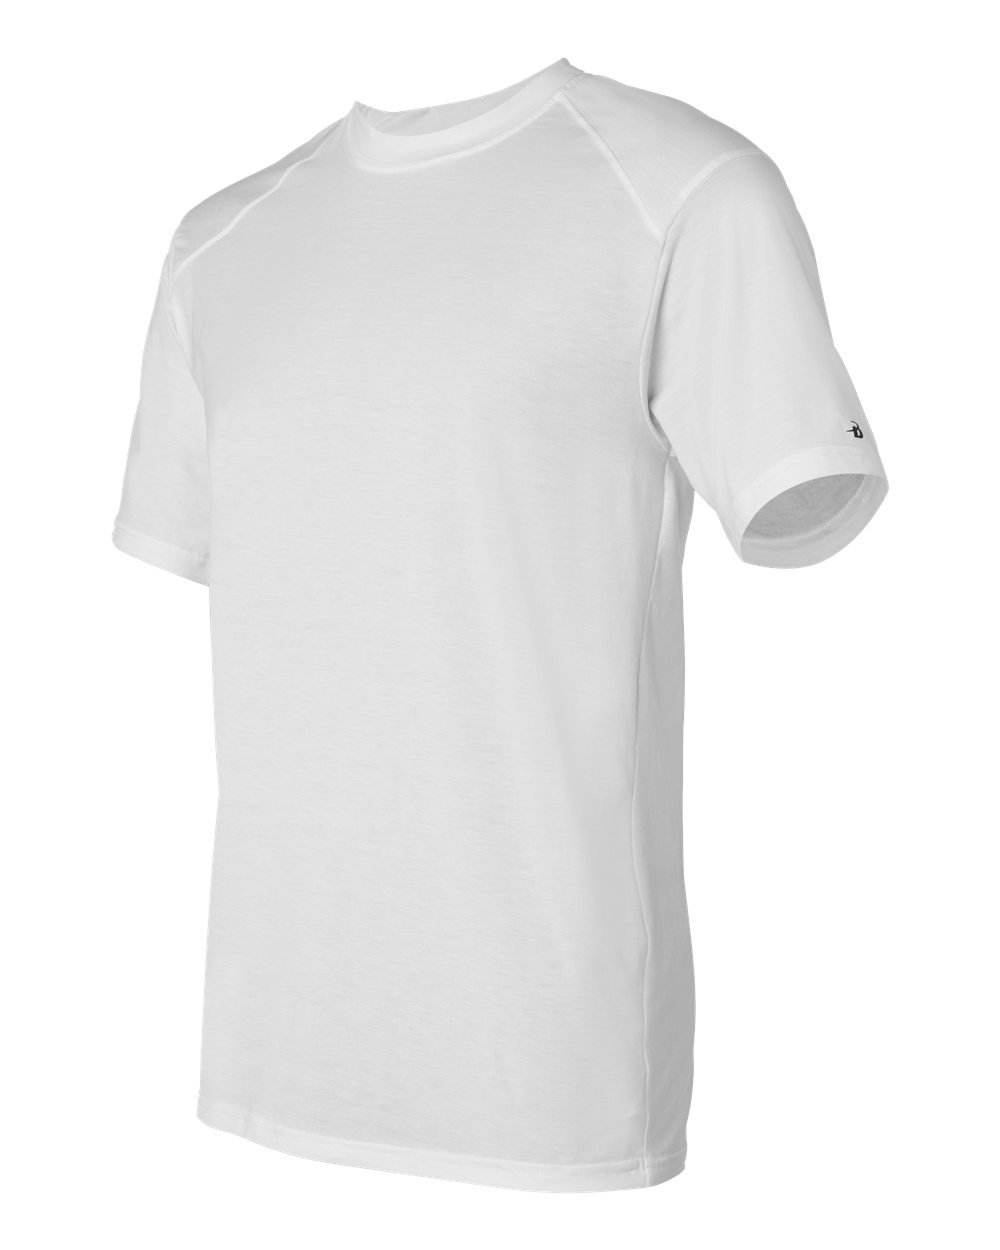 B-Tech Cotton-Feel T-Shirt - 4820-Badger